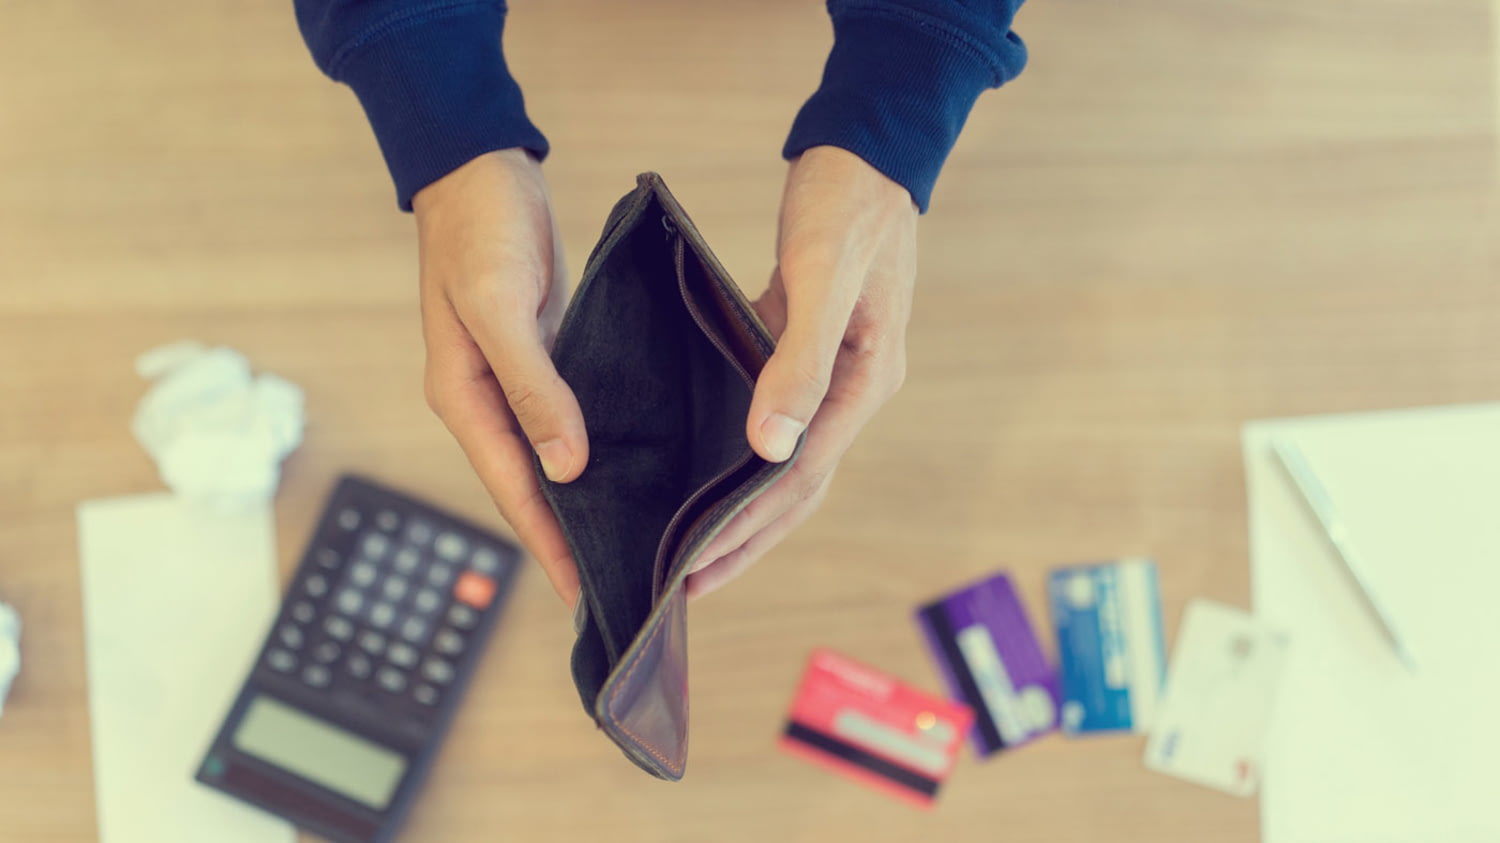 Ein Mann hält eine leere Börse und auf dem Boden liegen Rechnunge, Kreditkarten und ein Taschenrechner